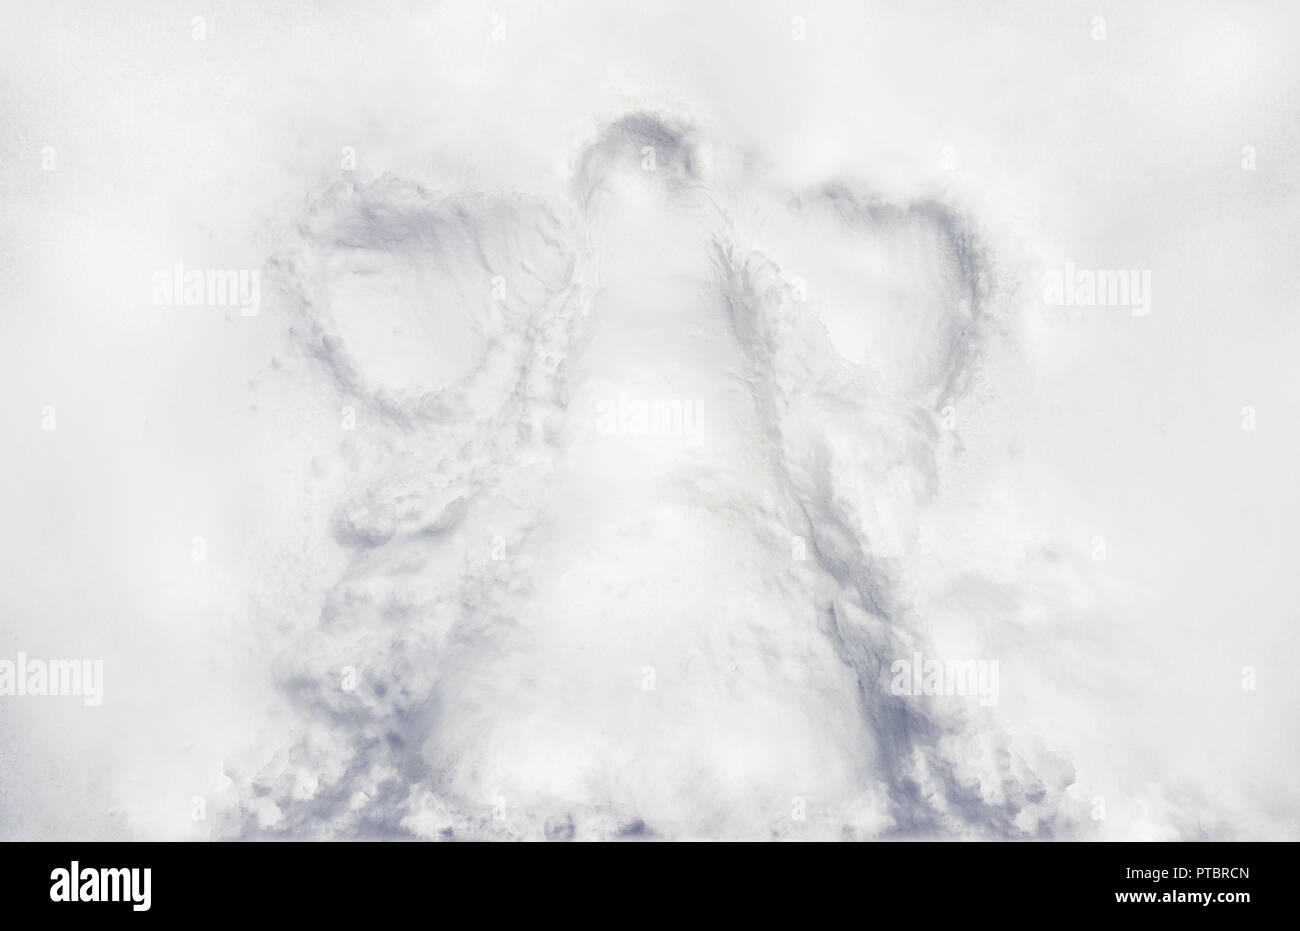 Eindruck im frischen Schnee fallen eines Schnee Winkel durch eine junge Kind getan. Fehlende Kind, fehlende Kinder Stockfoto